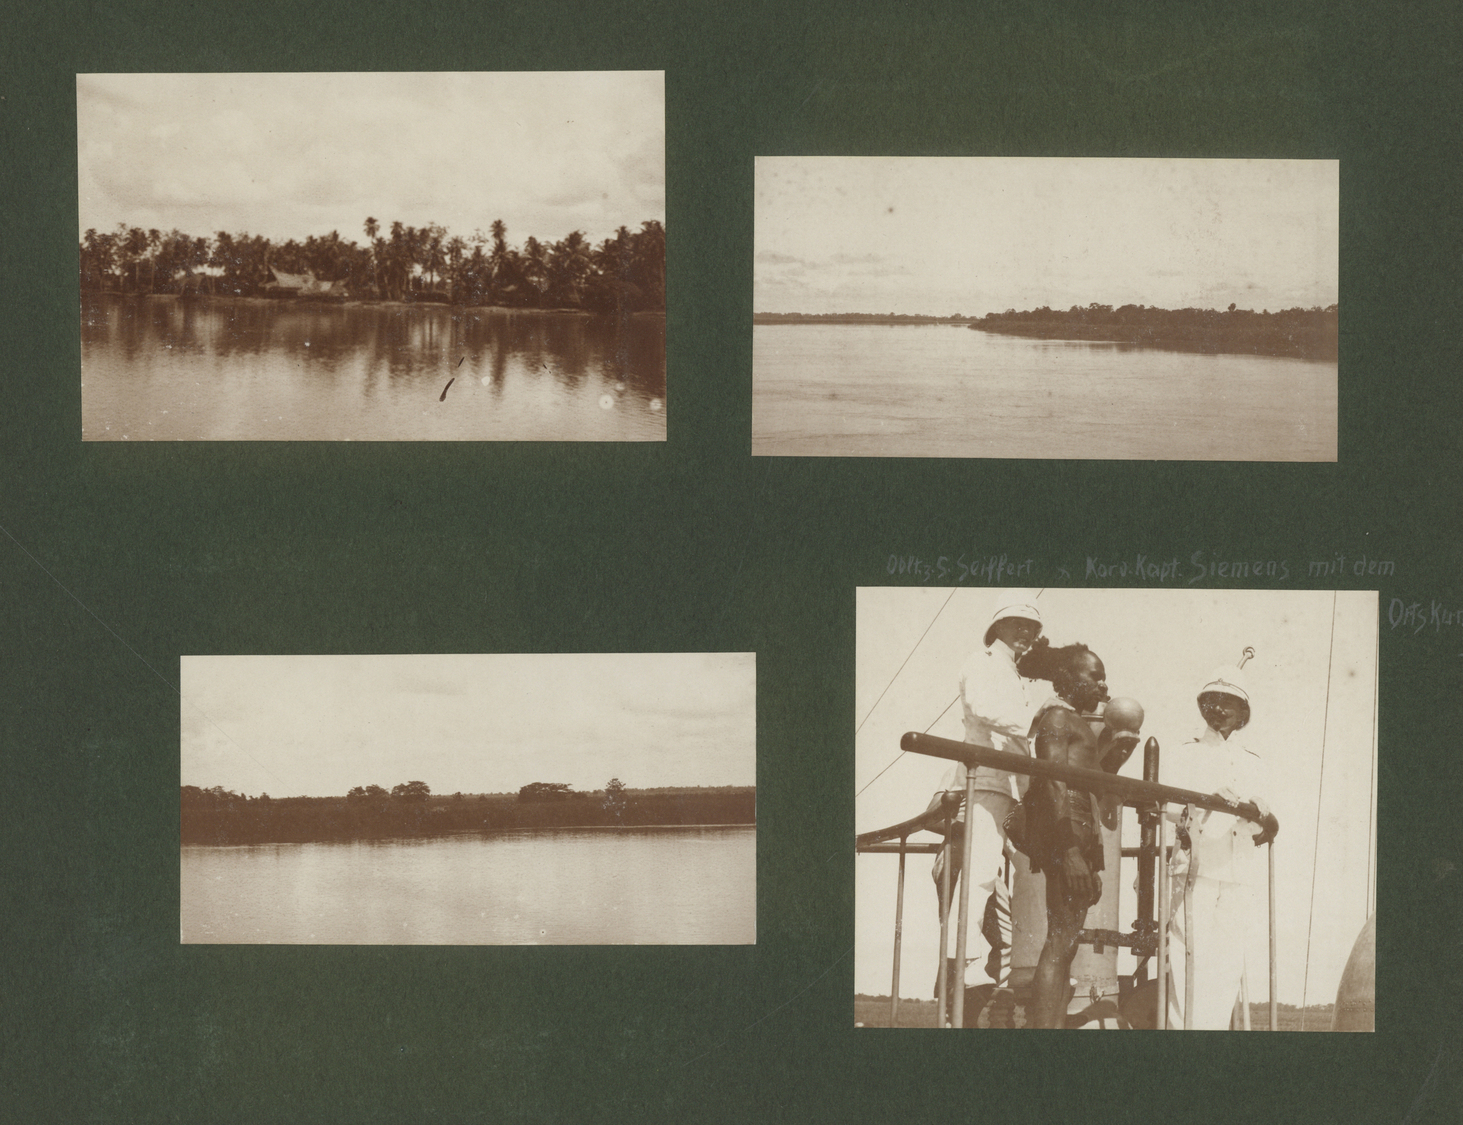 Deutsch-Neuguinea - Besonderheiten:  1909/1910: 2 Fotoalben SMS Cormoran  In Der Südsee, 167 Fotos + - Deutsch-Neuguinea